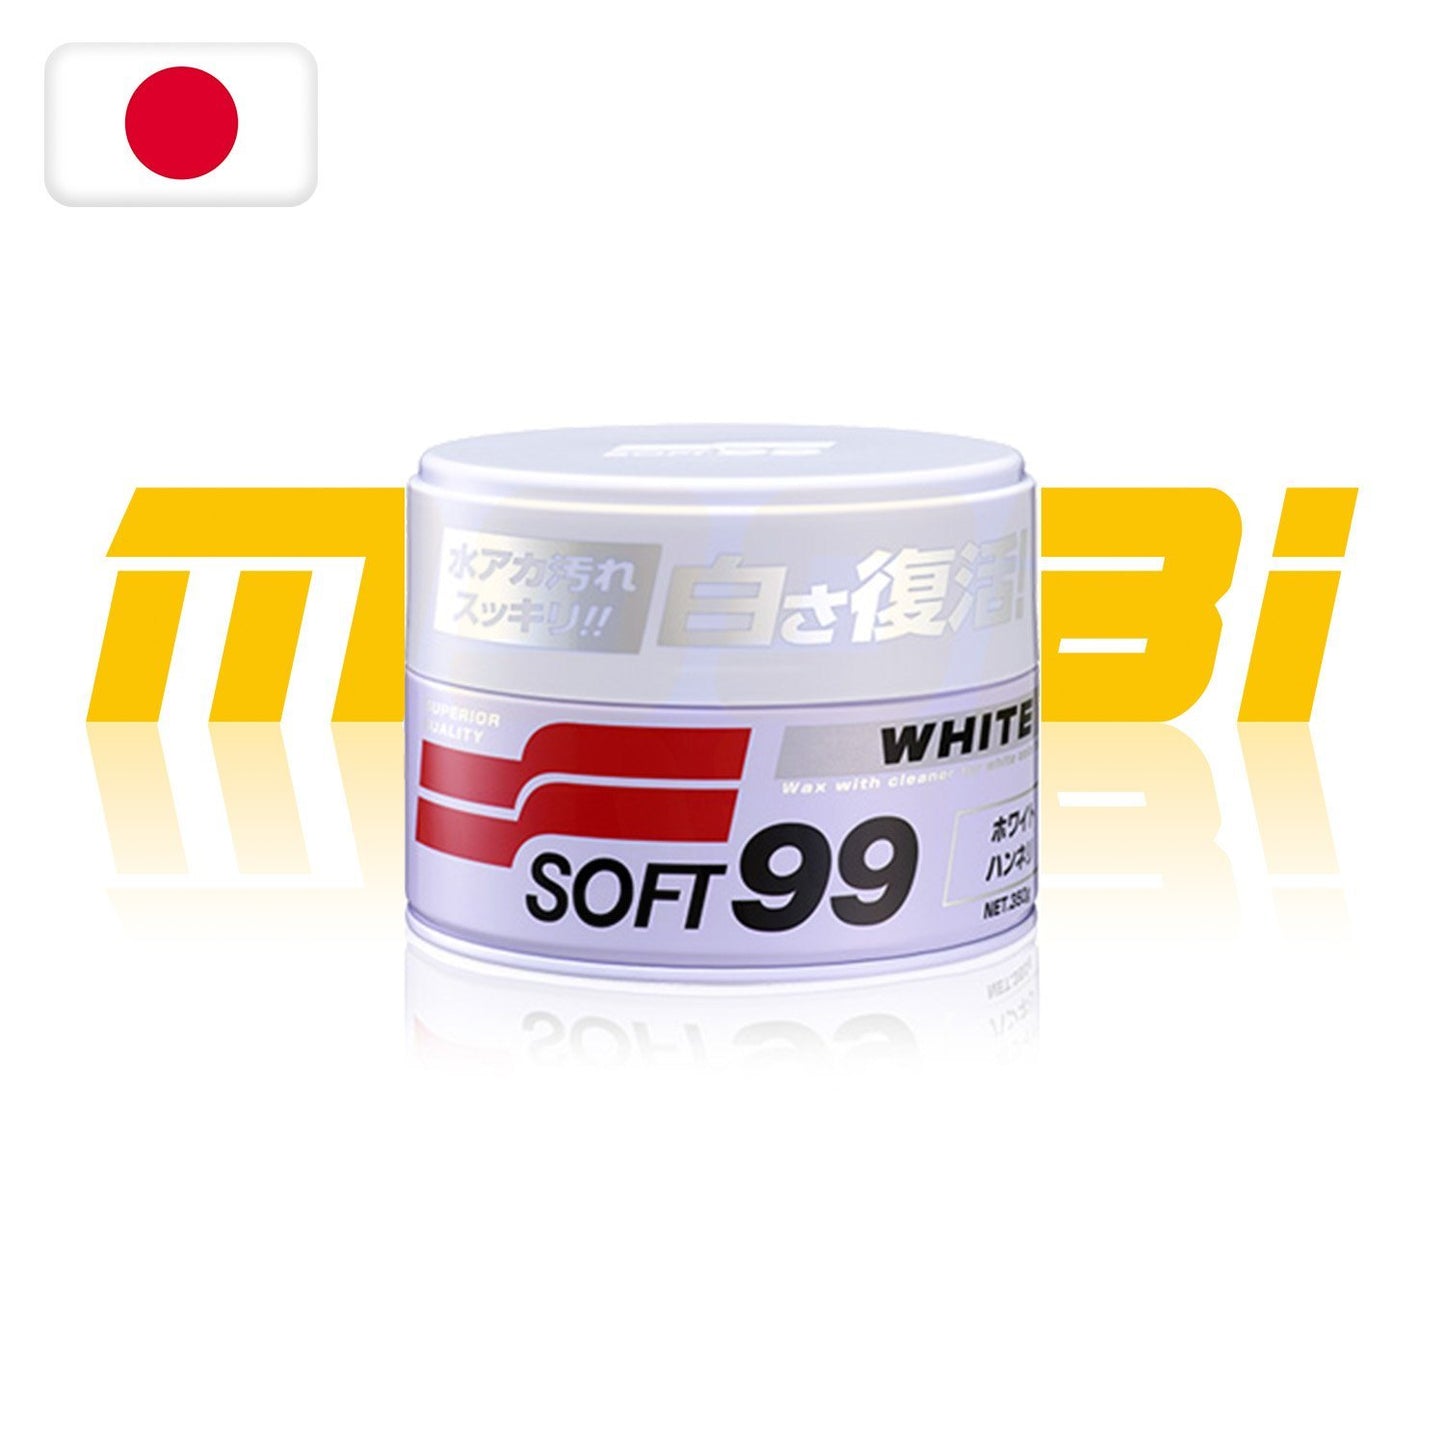 SOFT99 | 高級拋光車蠟 Soft Paste Cleaning Car Wax | 日本製 | MOOBI 香港網上汽車用品店 p2